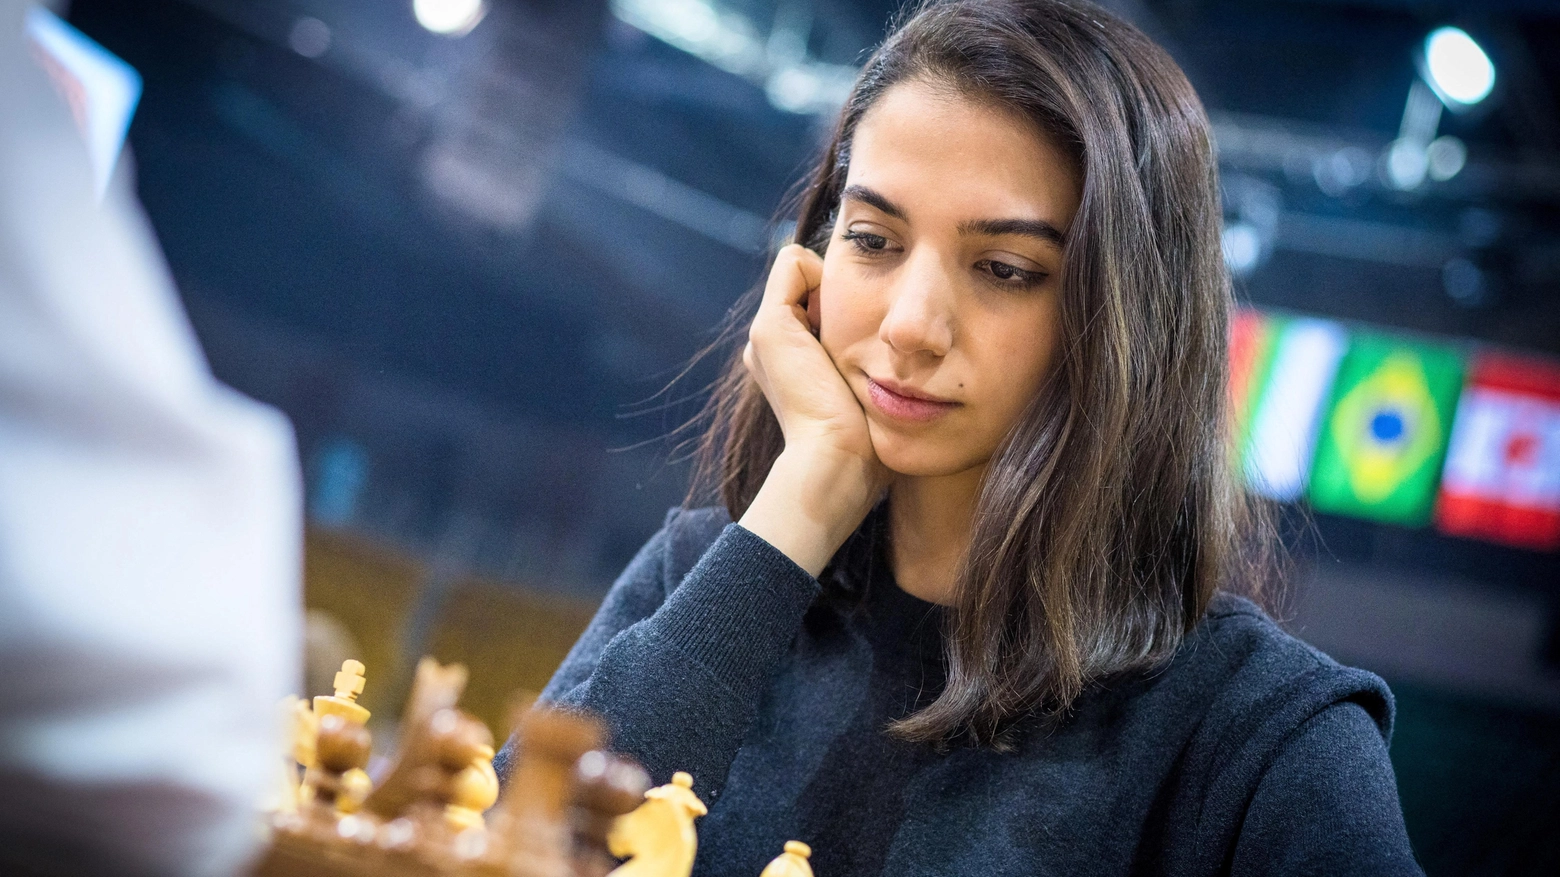 La campionessa di scacchi iraniana Sara Khadim, 25 anni, al Mondiale senza velo